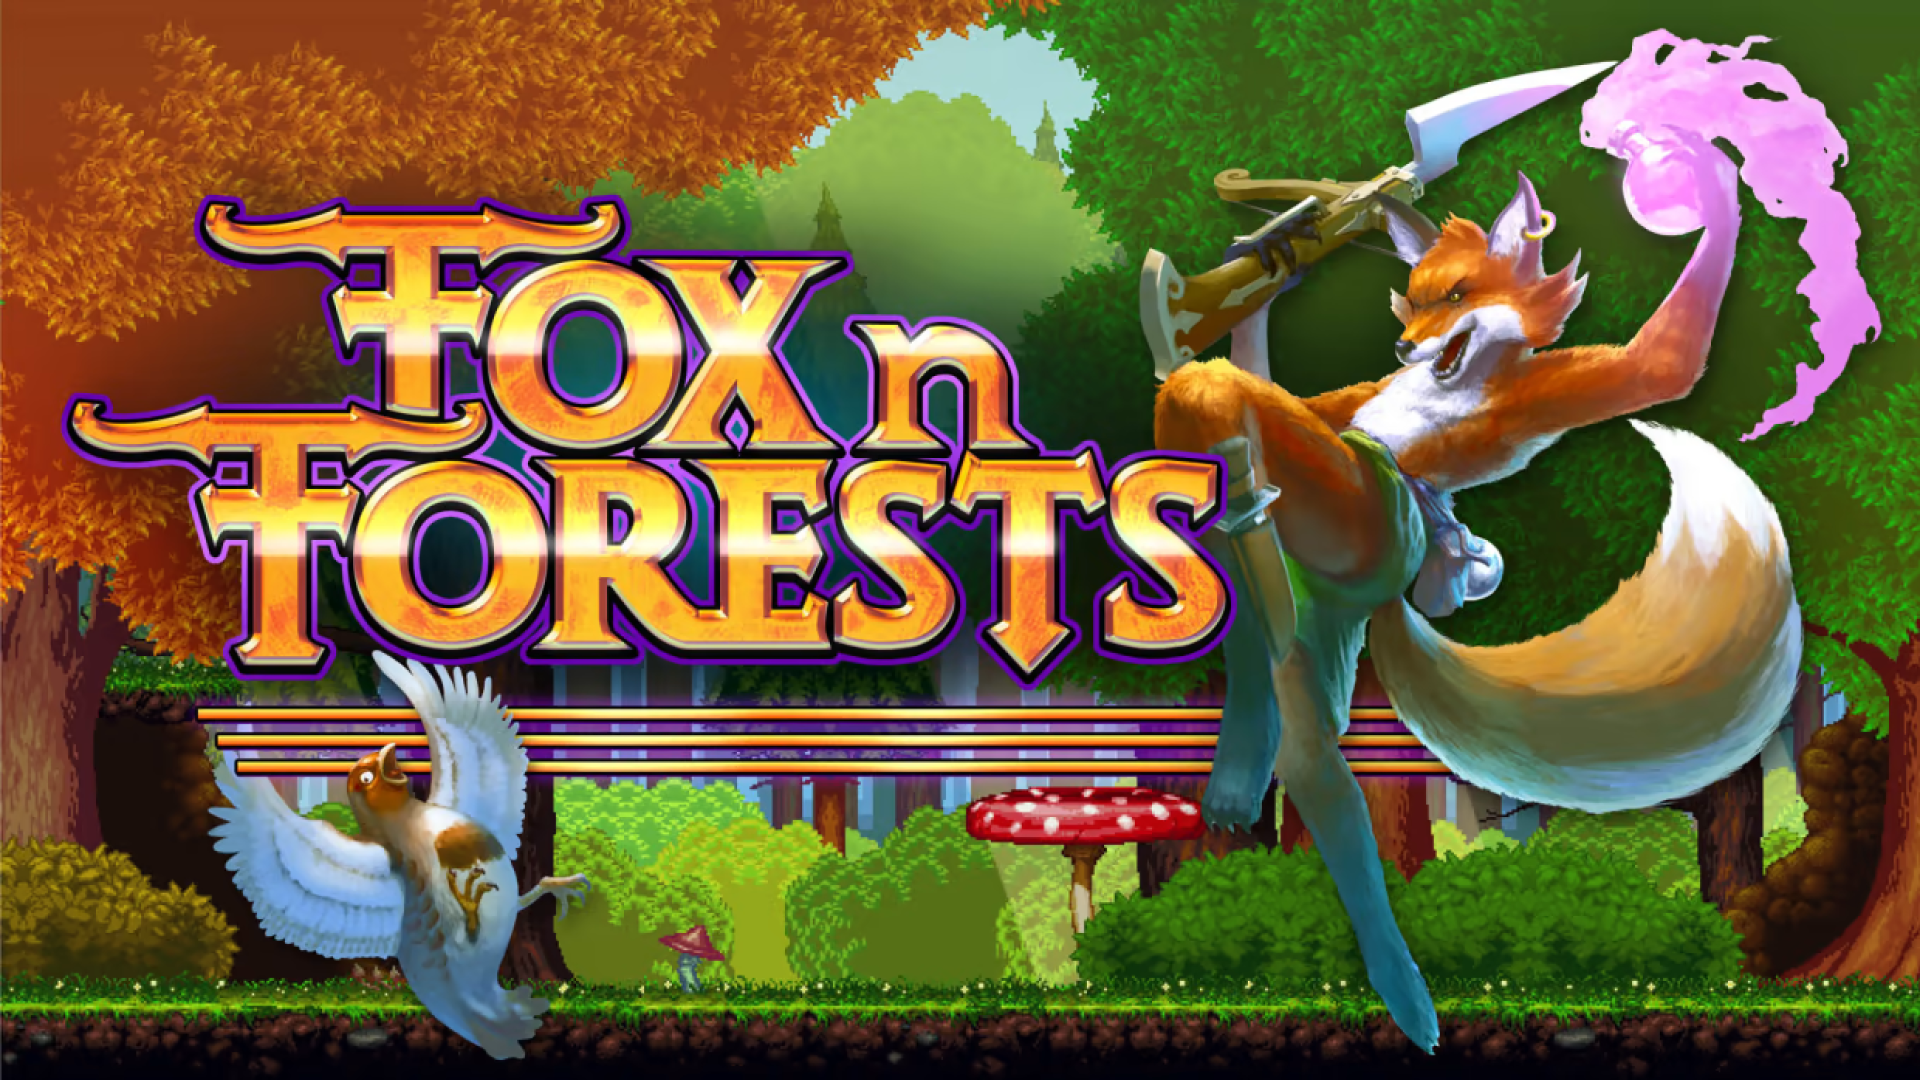 FOX n FORESTS Logo